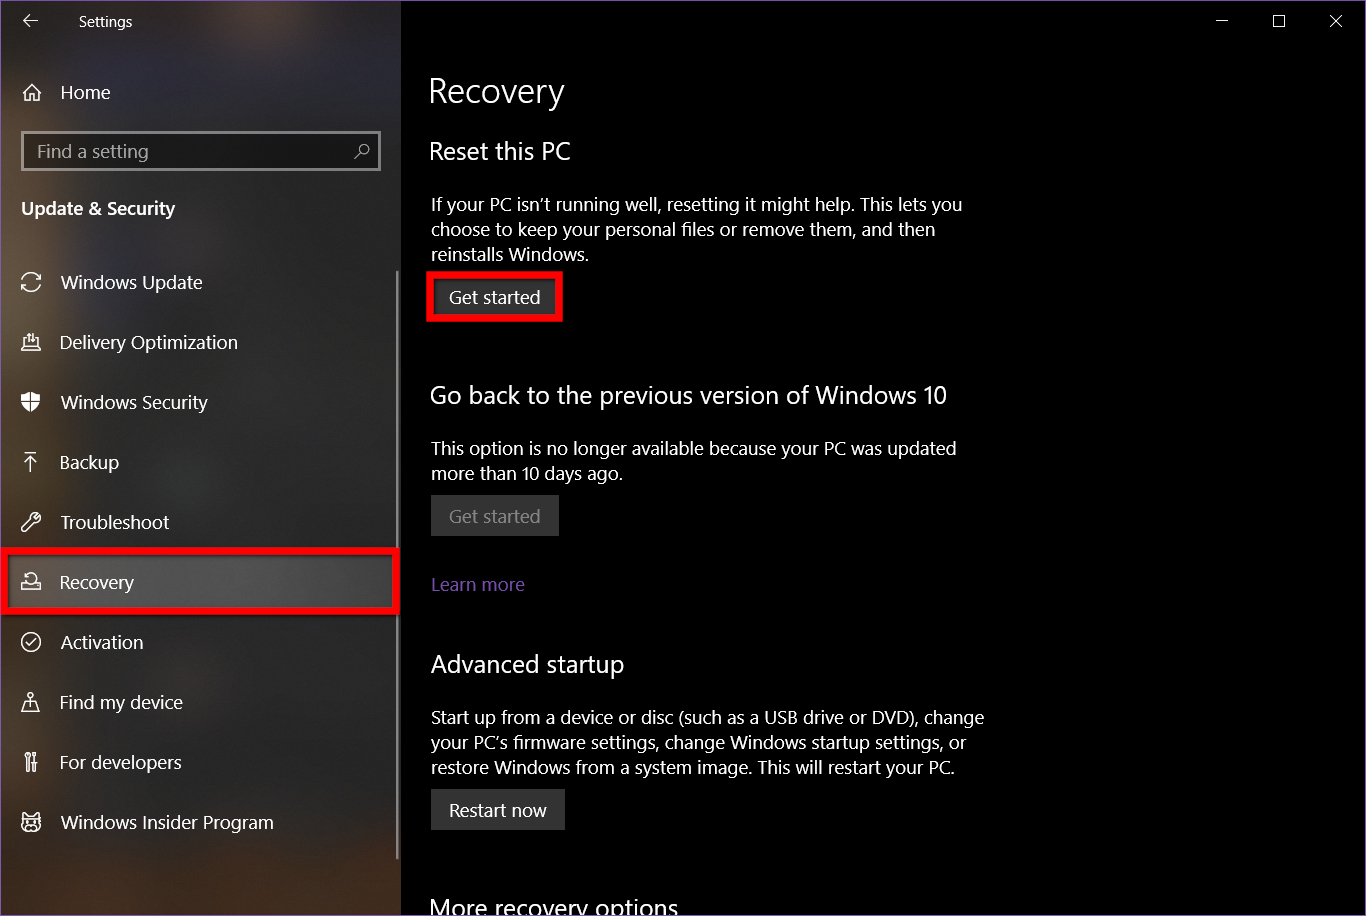 Windows 10 Recovery Settings menu.